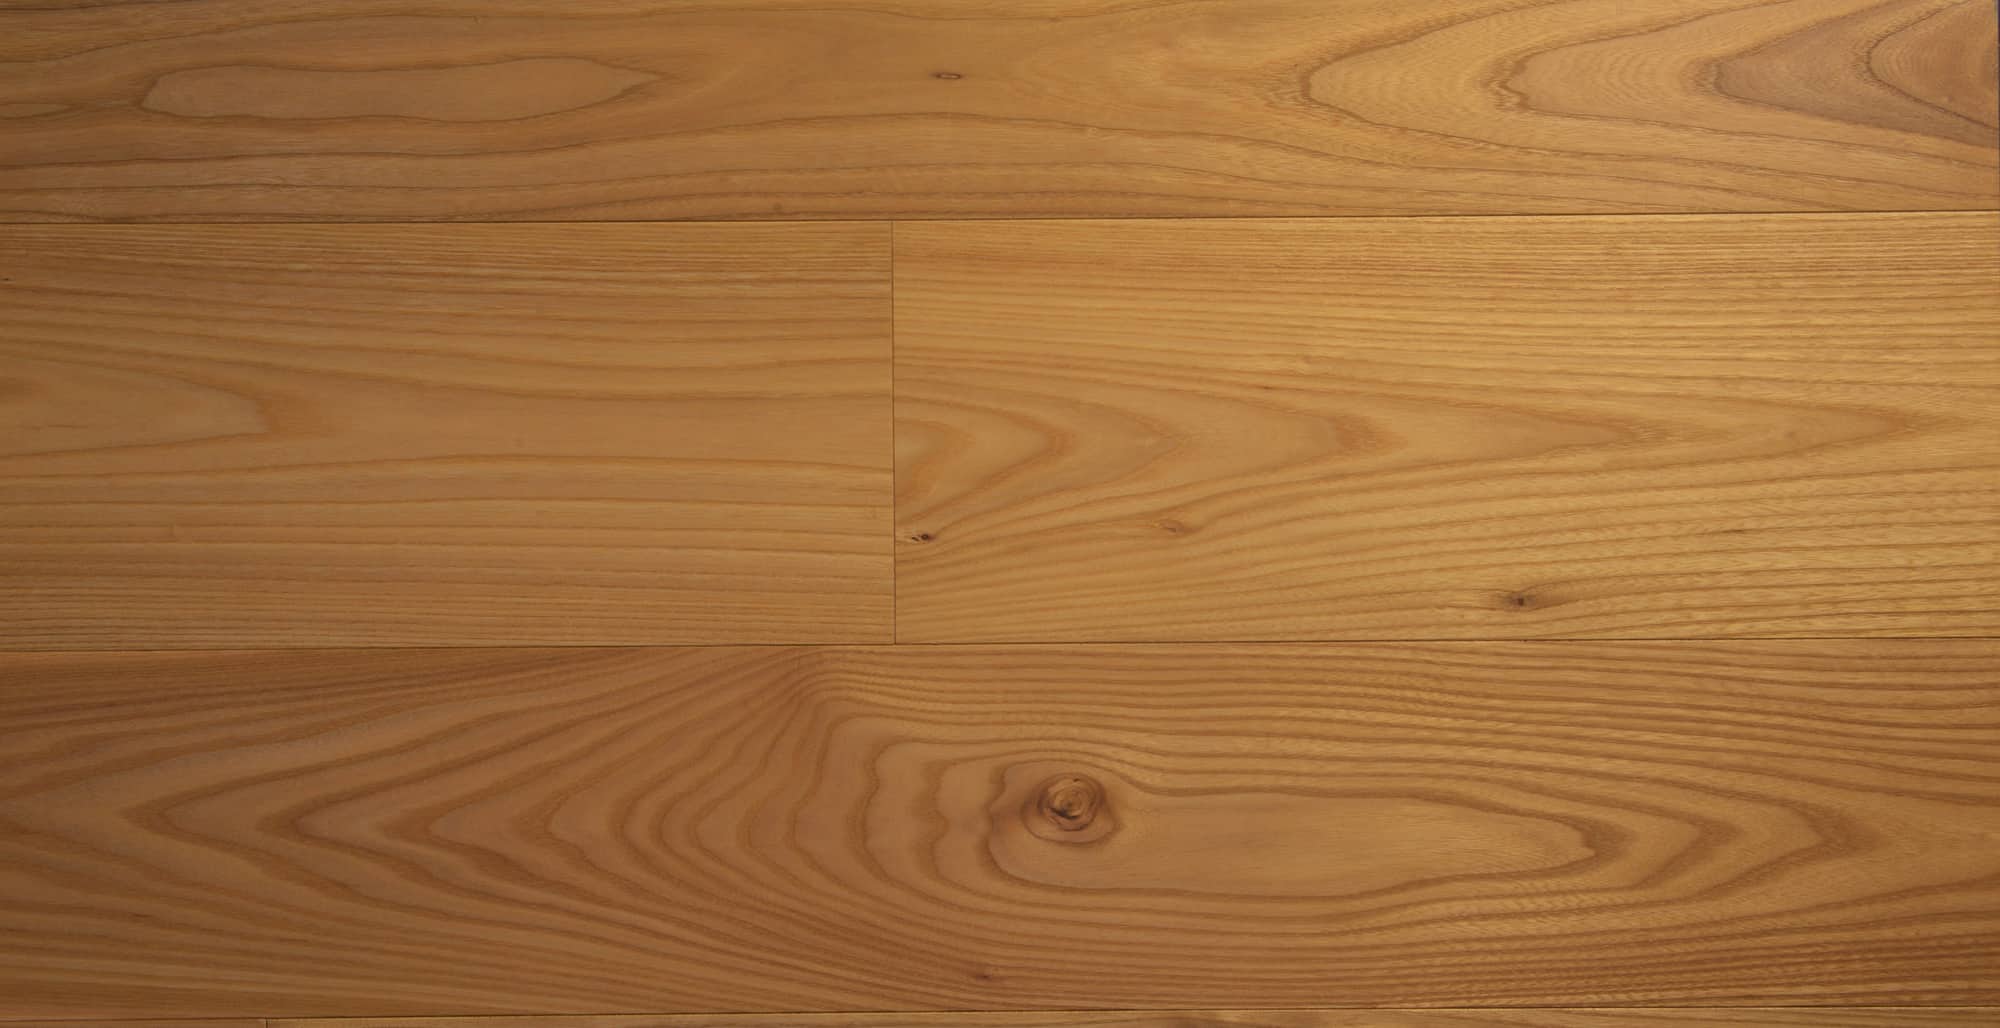 American Elm Wood Flooring London, Elm Hardwood Flooring Reviews